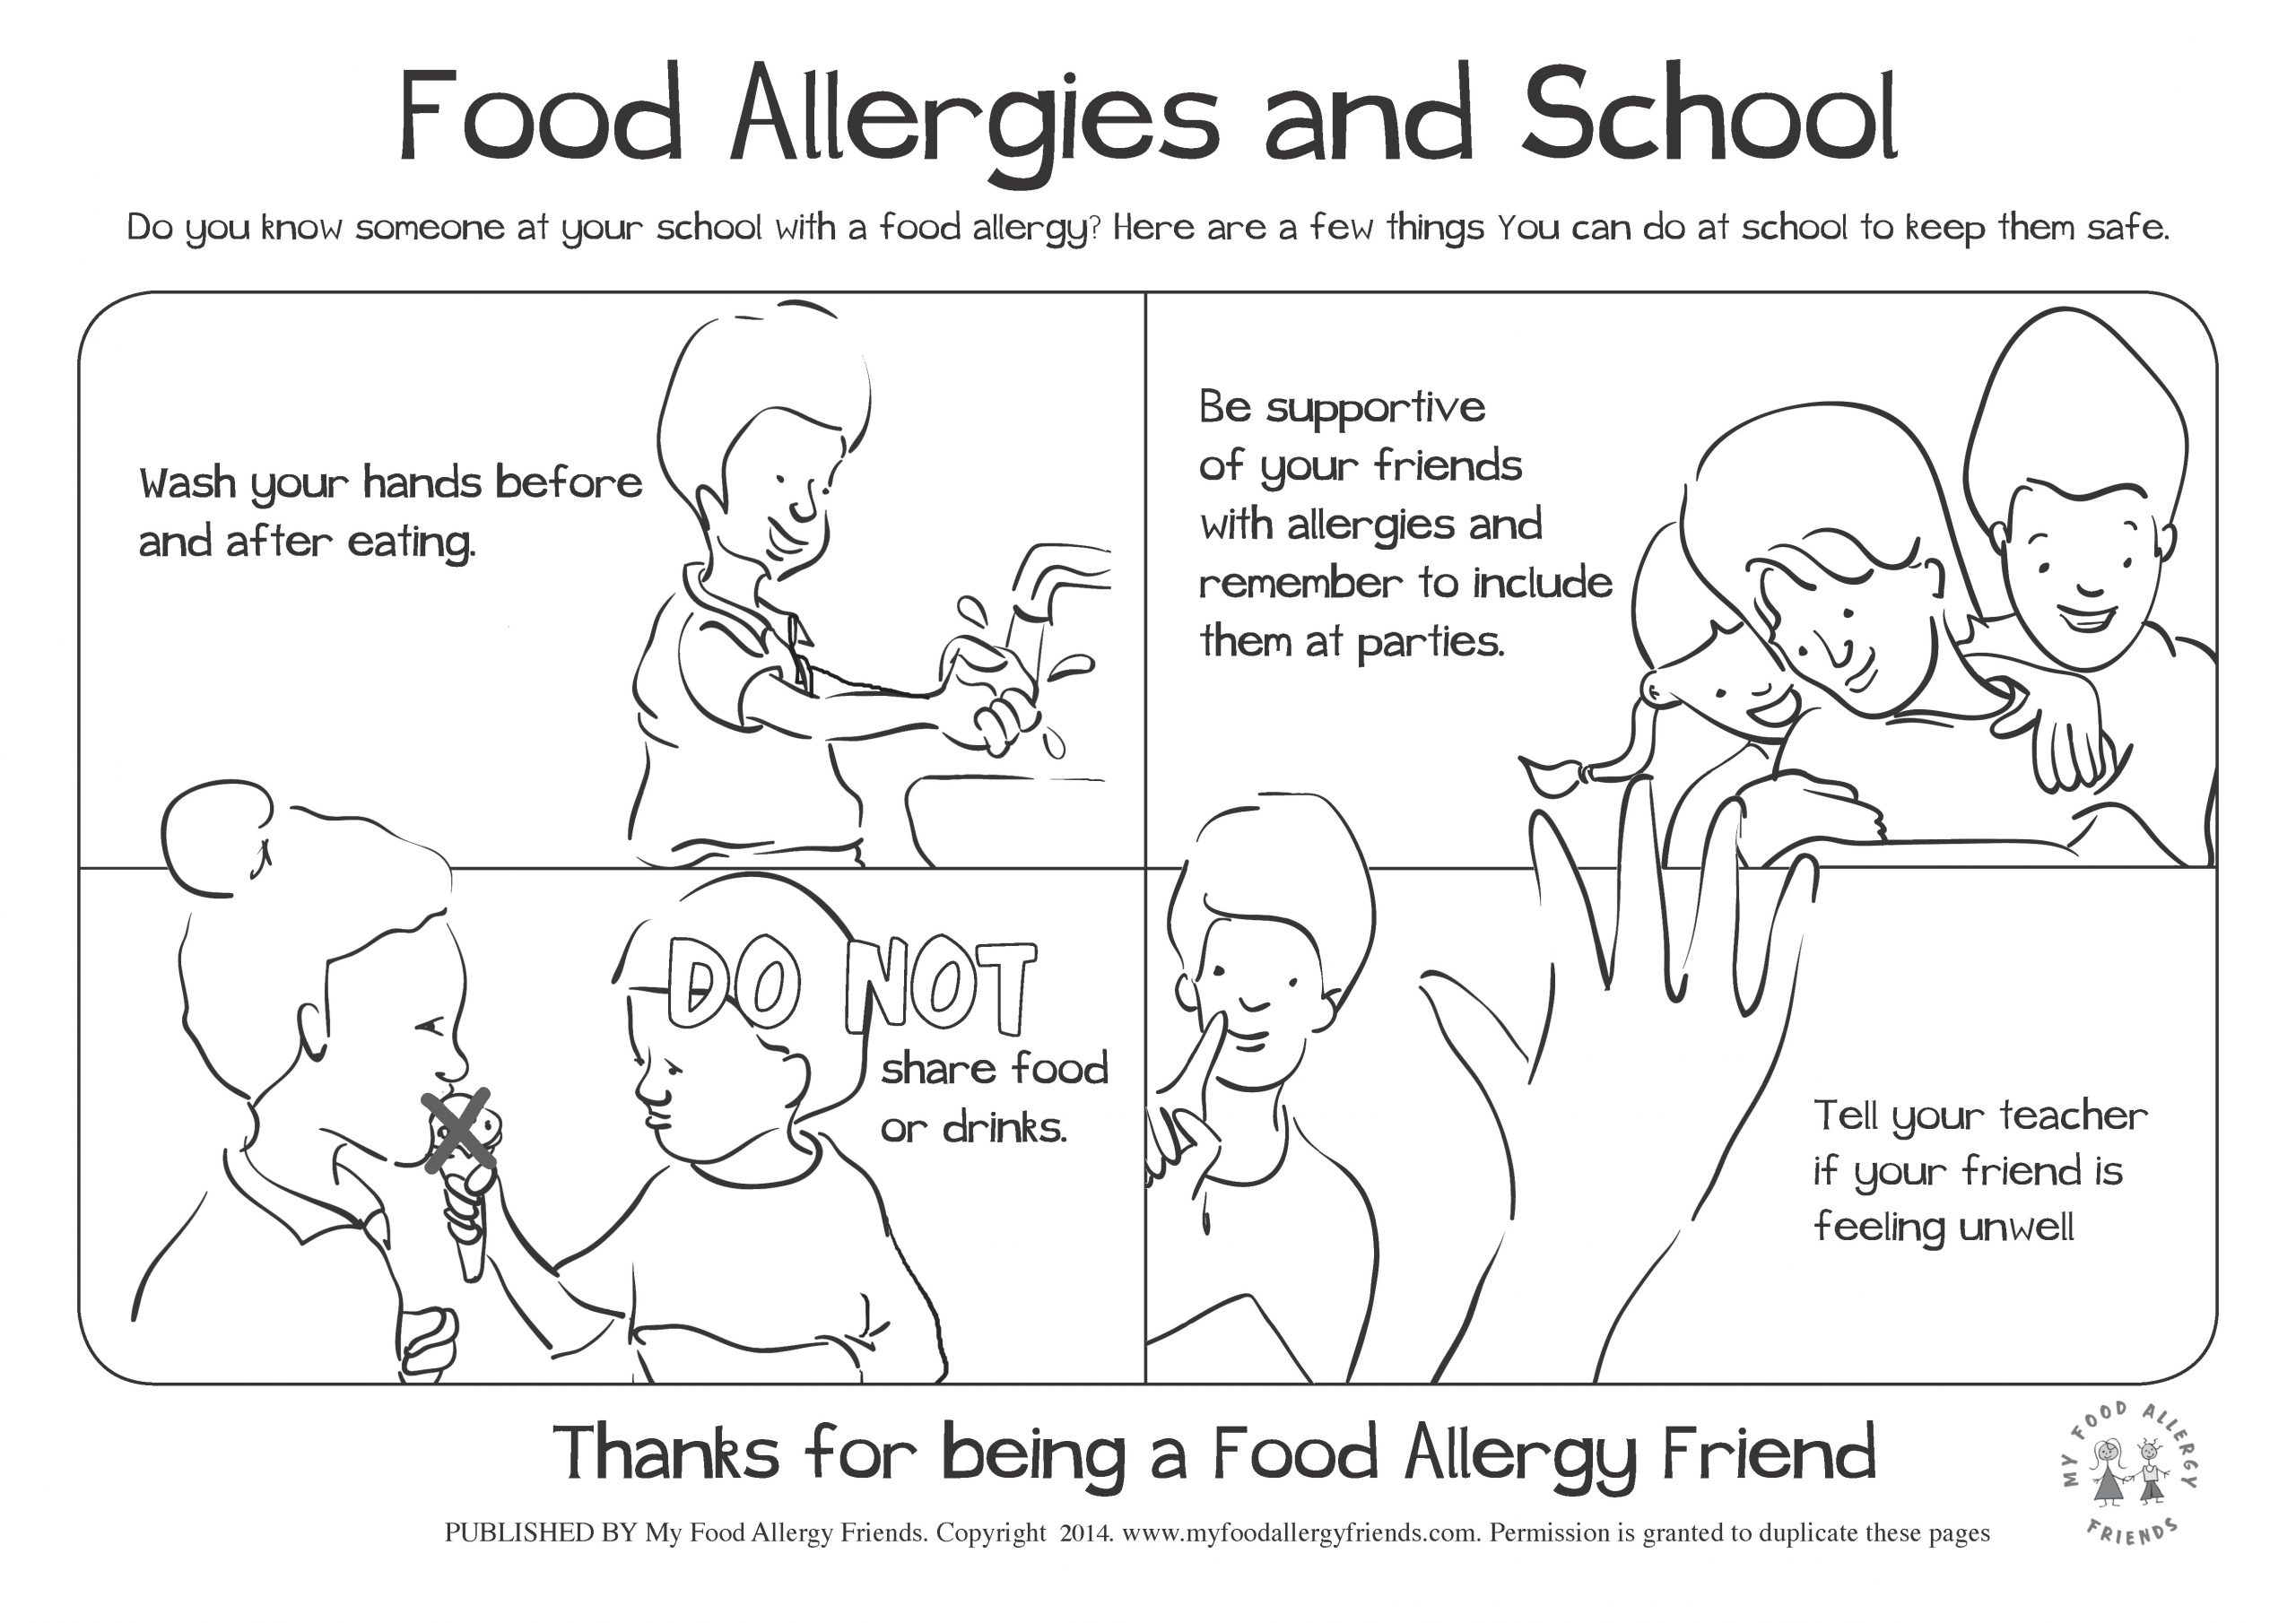 Food Allergies at School